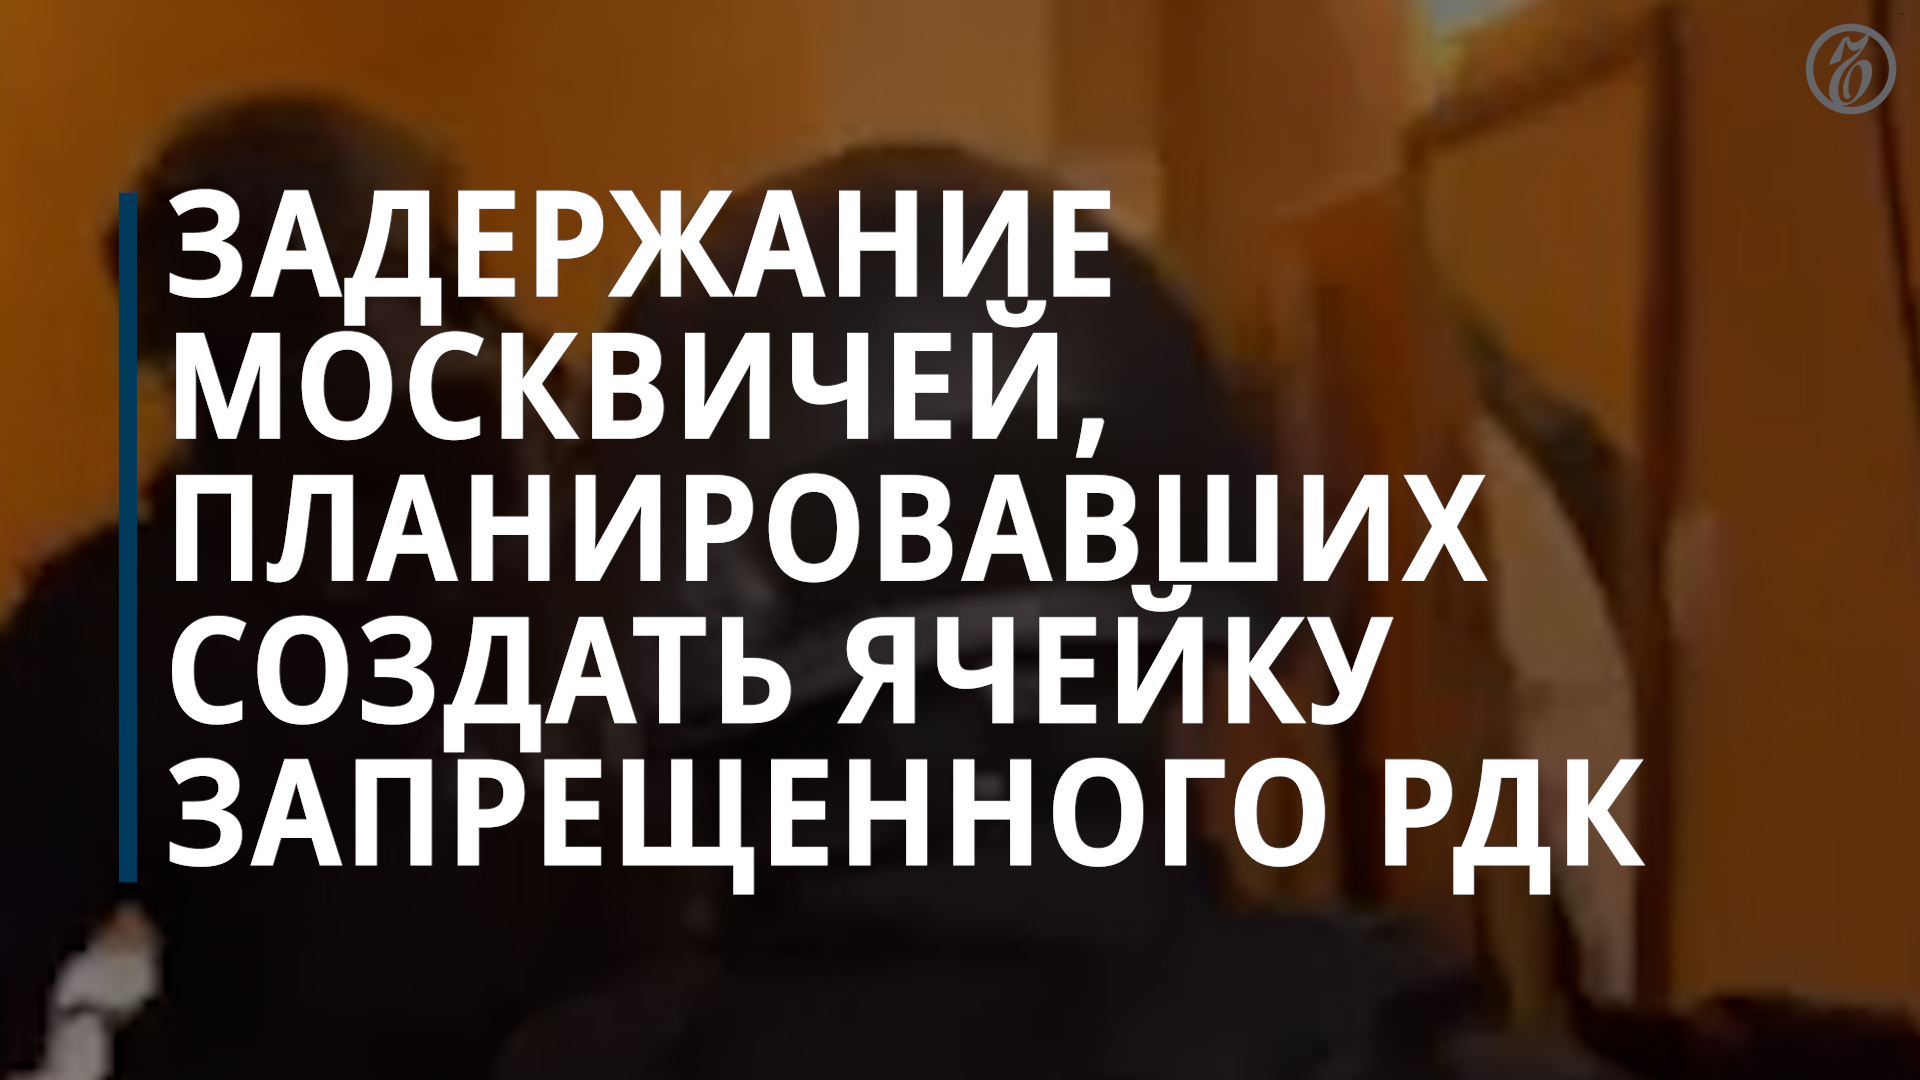 ФСБ: задержаны москвичи, планировавшие создать ячейку запрещенного РДК